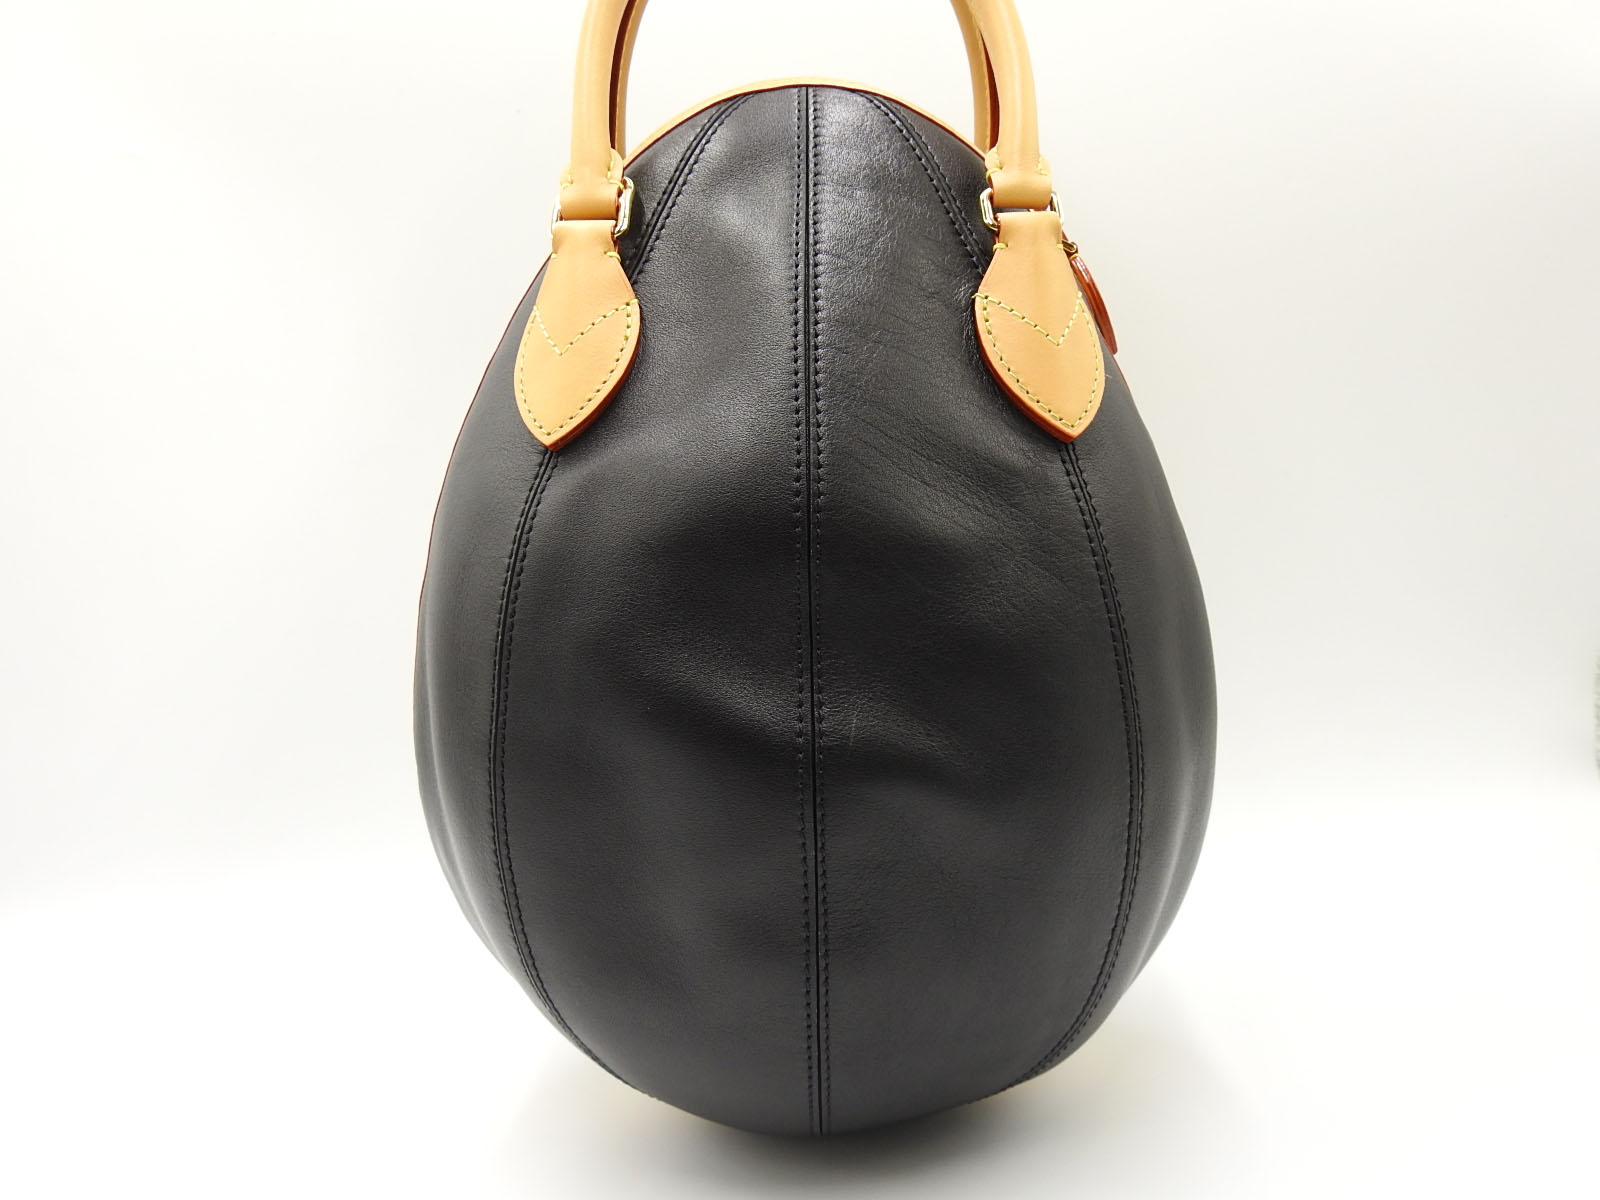 LOUIS VUITTON LV Souple Egg Bag 2way Hand Shoulder Bag Monogram Noir M45269 3025 | eBay